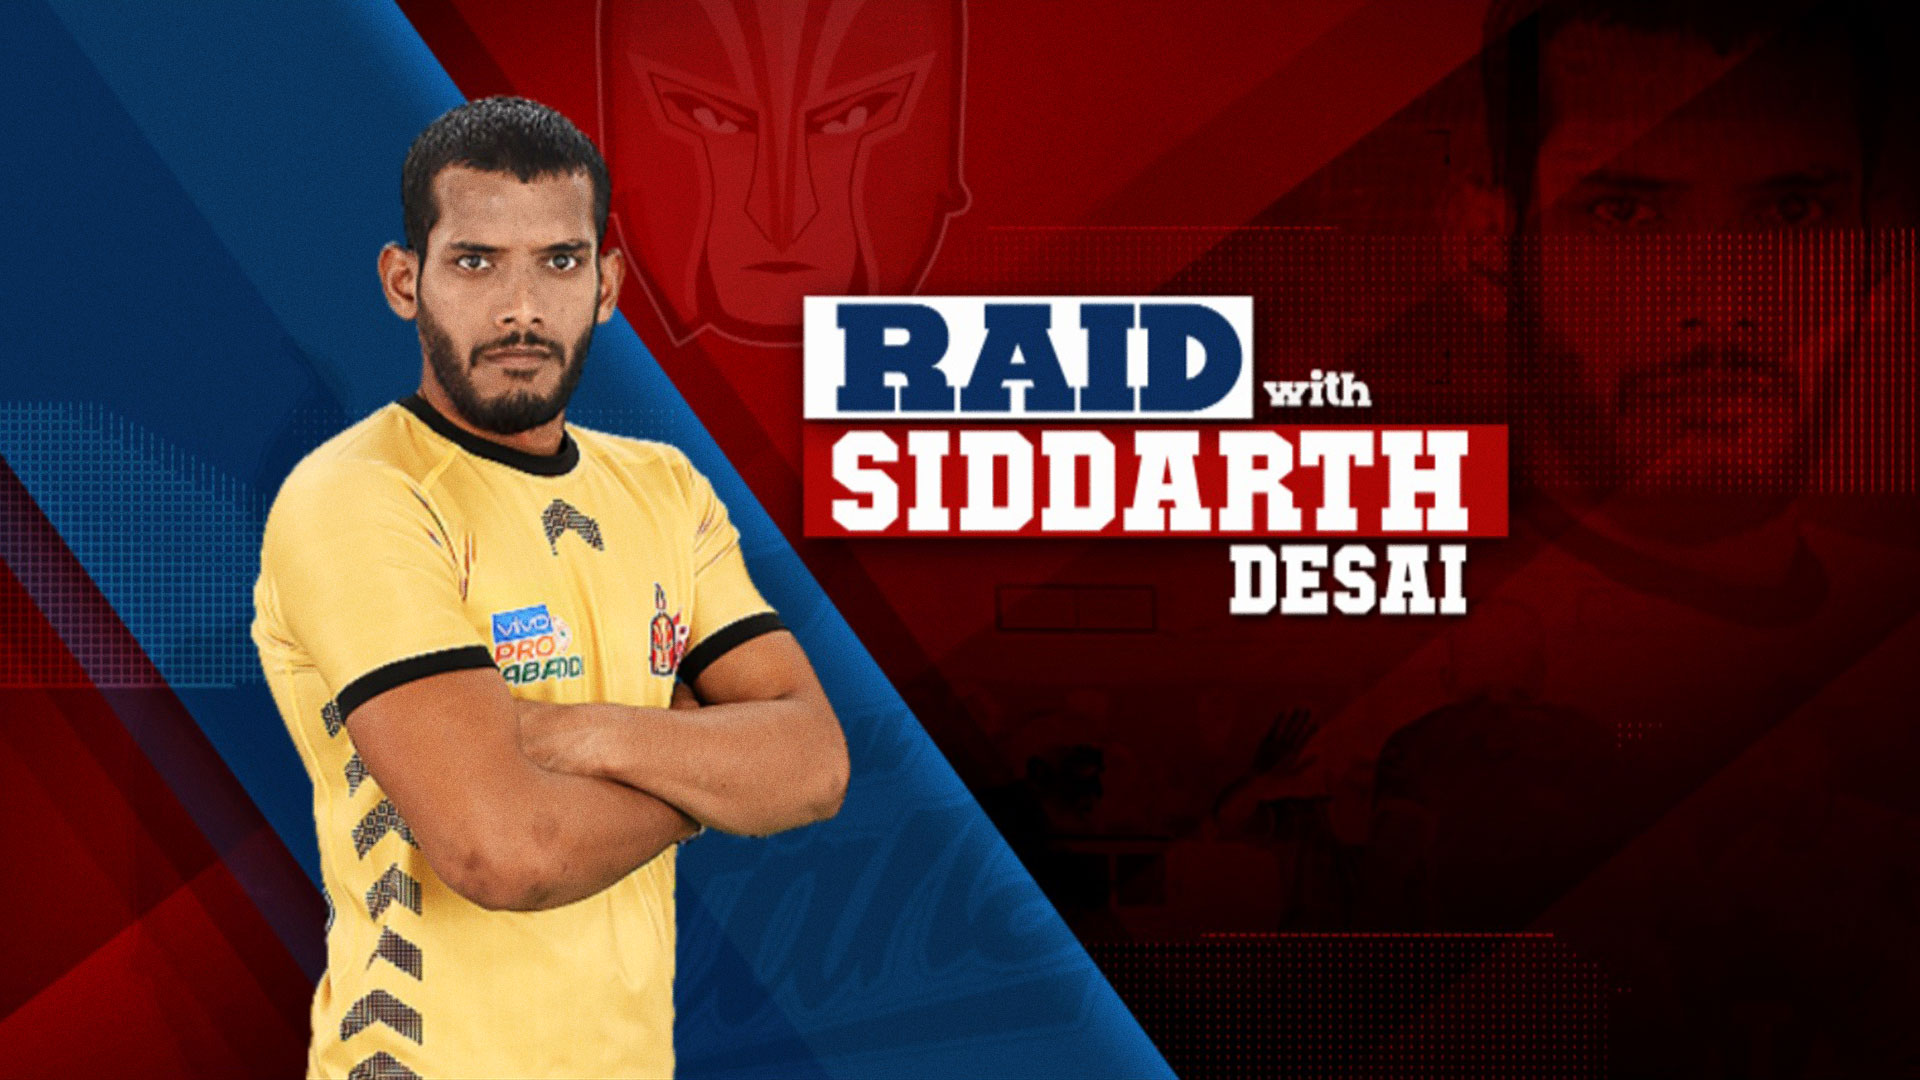 Raid With Siddharth 2019 Telugu